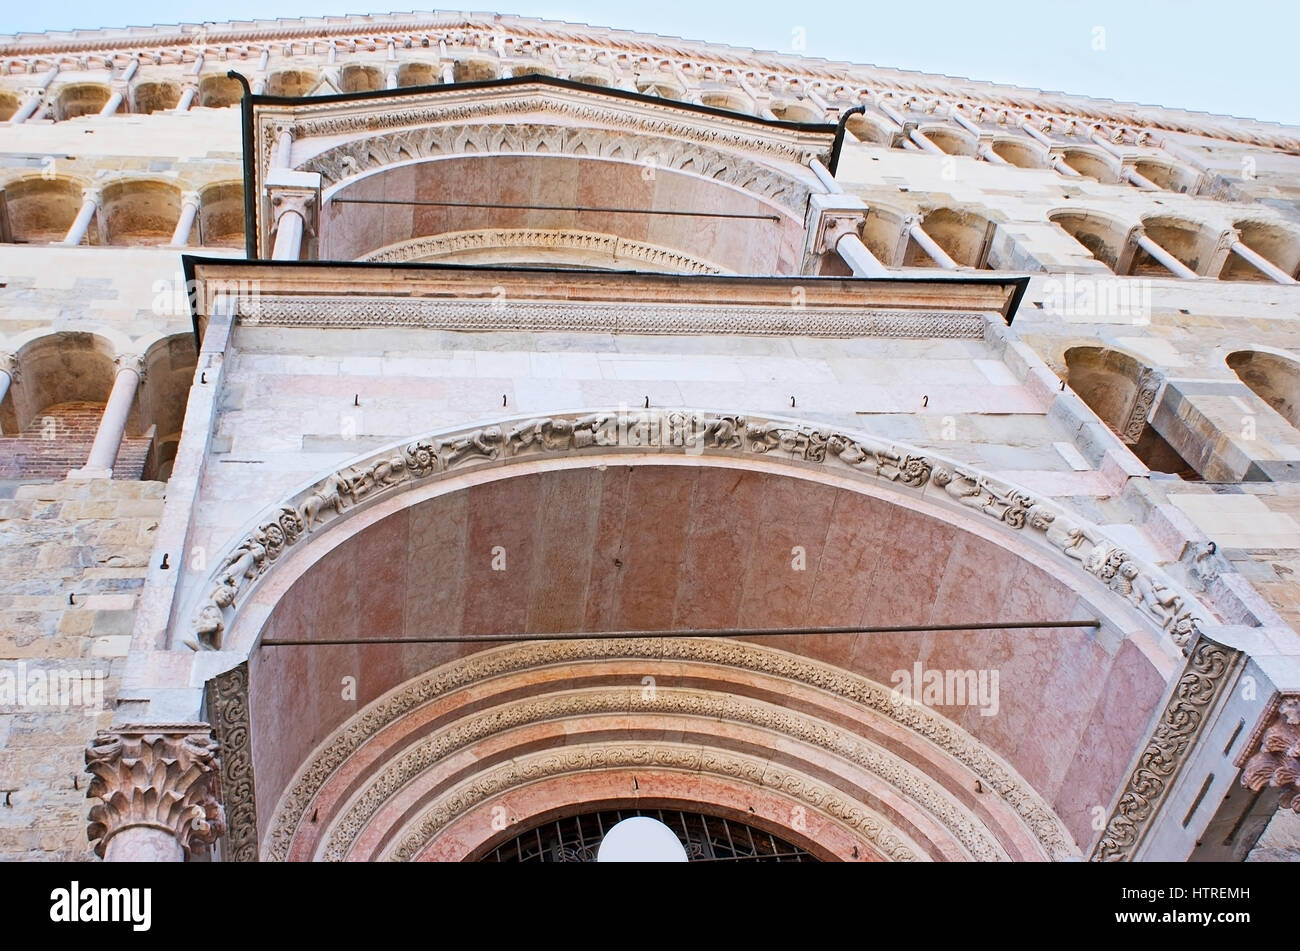 La façade de cathédrale d'Assomption de la Bienheureuse Vierge Marie, situé dans la place du Duomo, décorées avec double ogive, reliefs sculptés, flore Banque D'Images